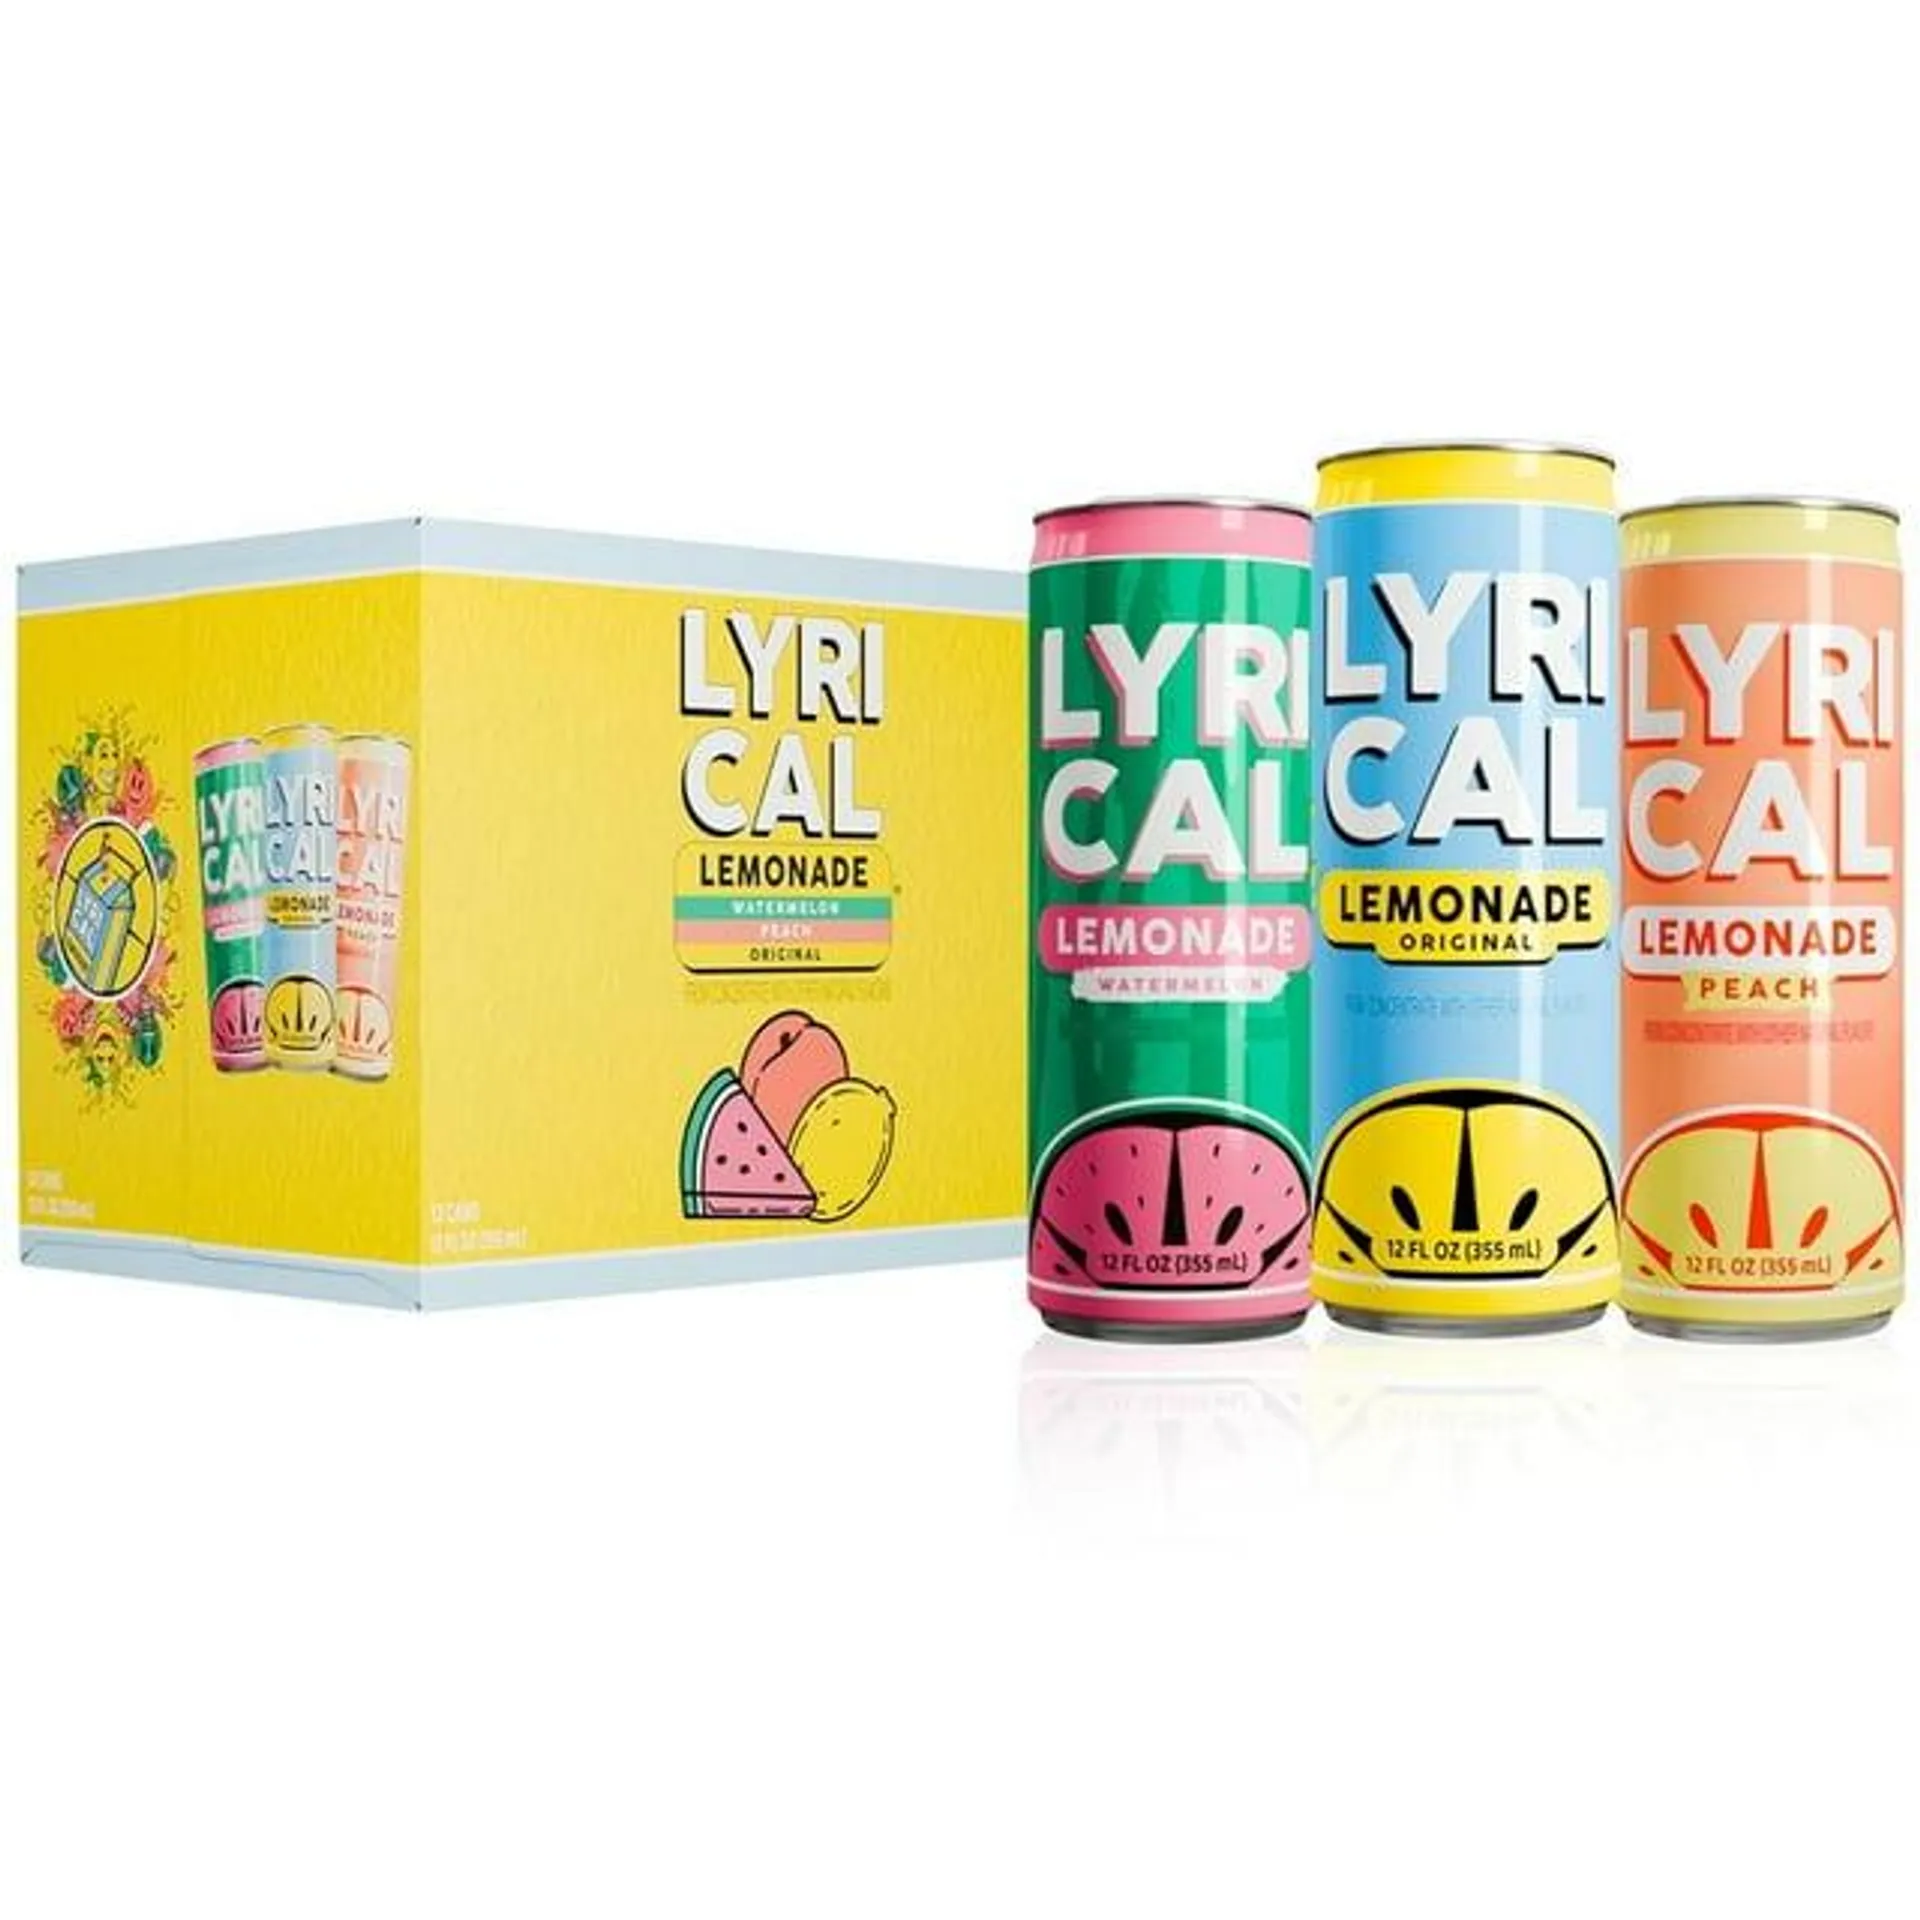 Lyrical Lemonade, 3 Flavor Juice Drink Variety Pack (Original, Watermelon, Peach), 12 fl oz, 12 Pack Cans